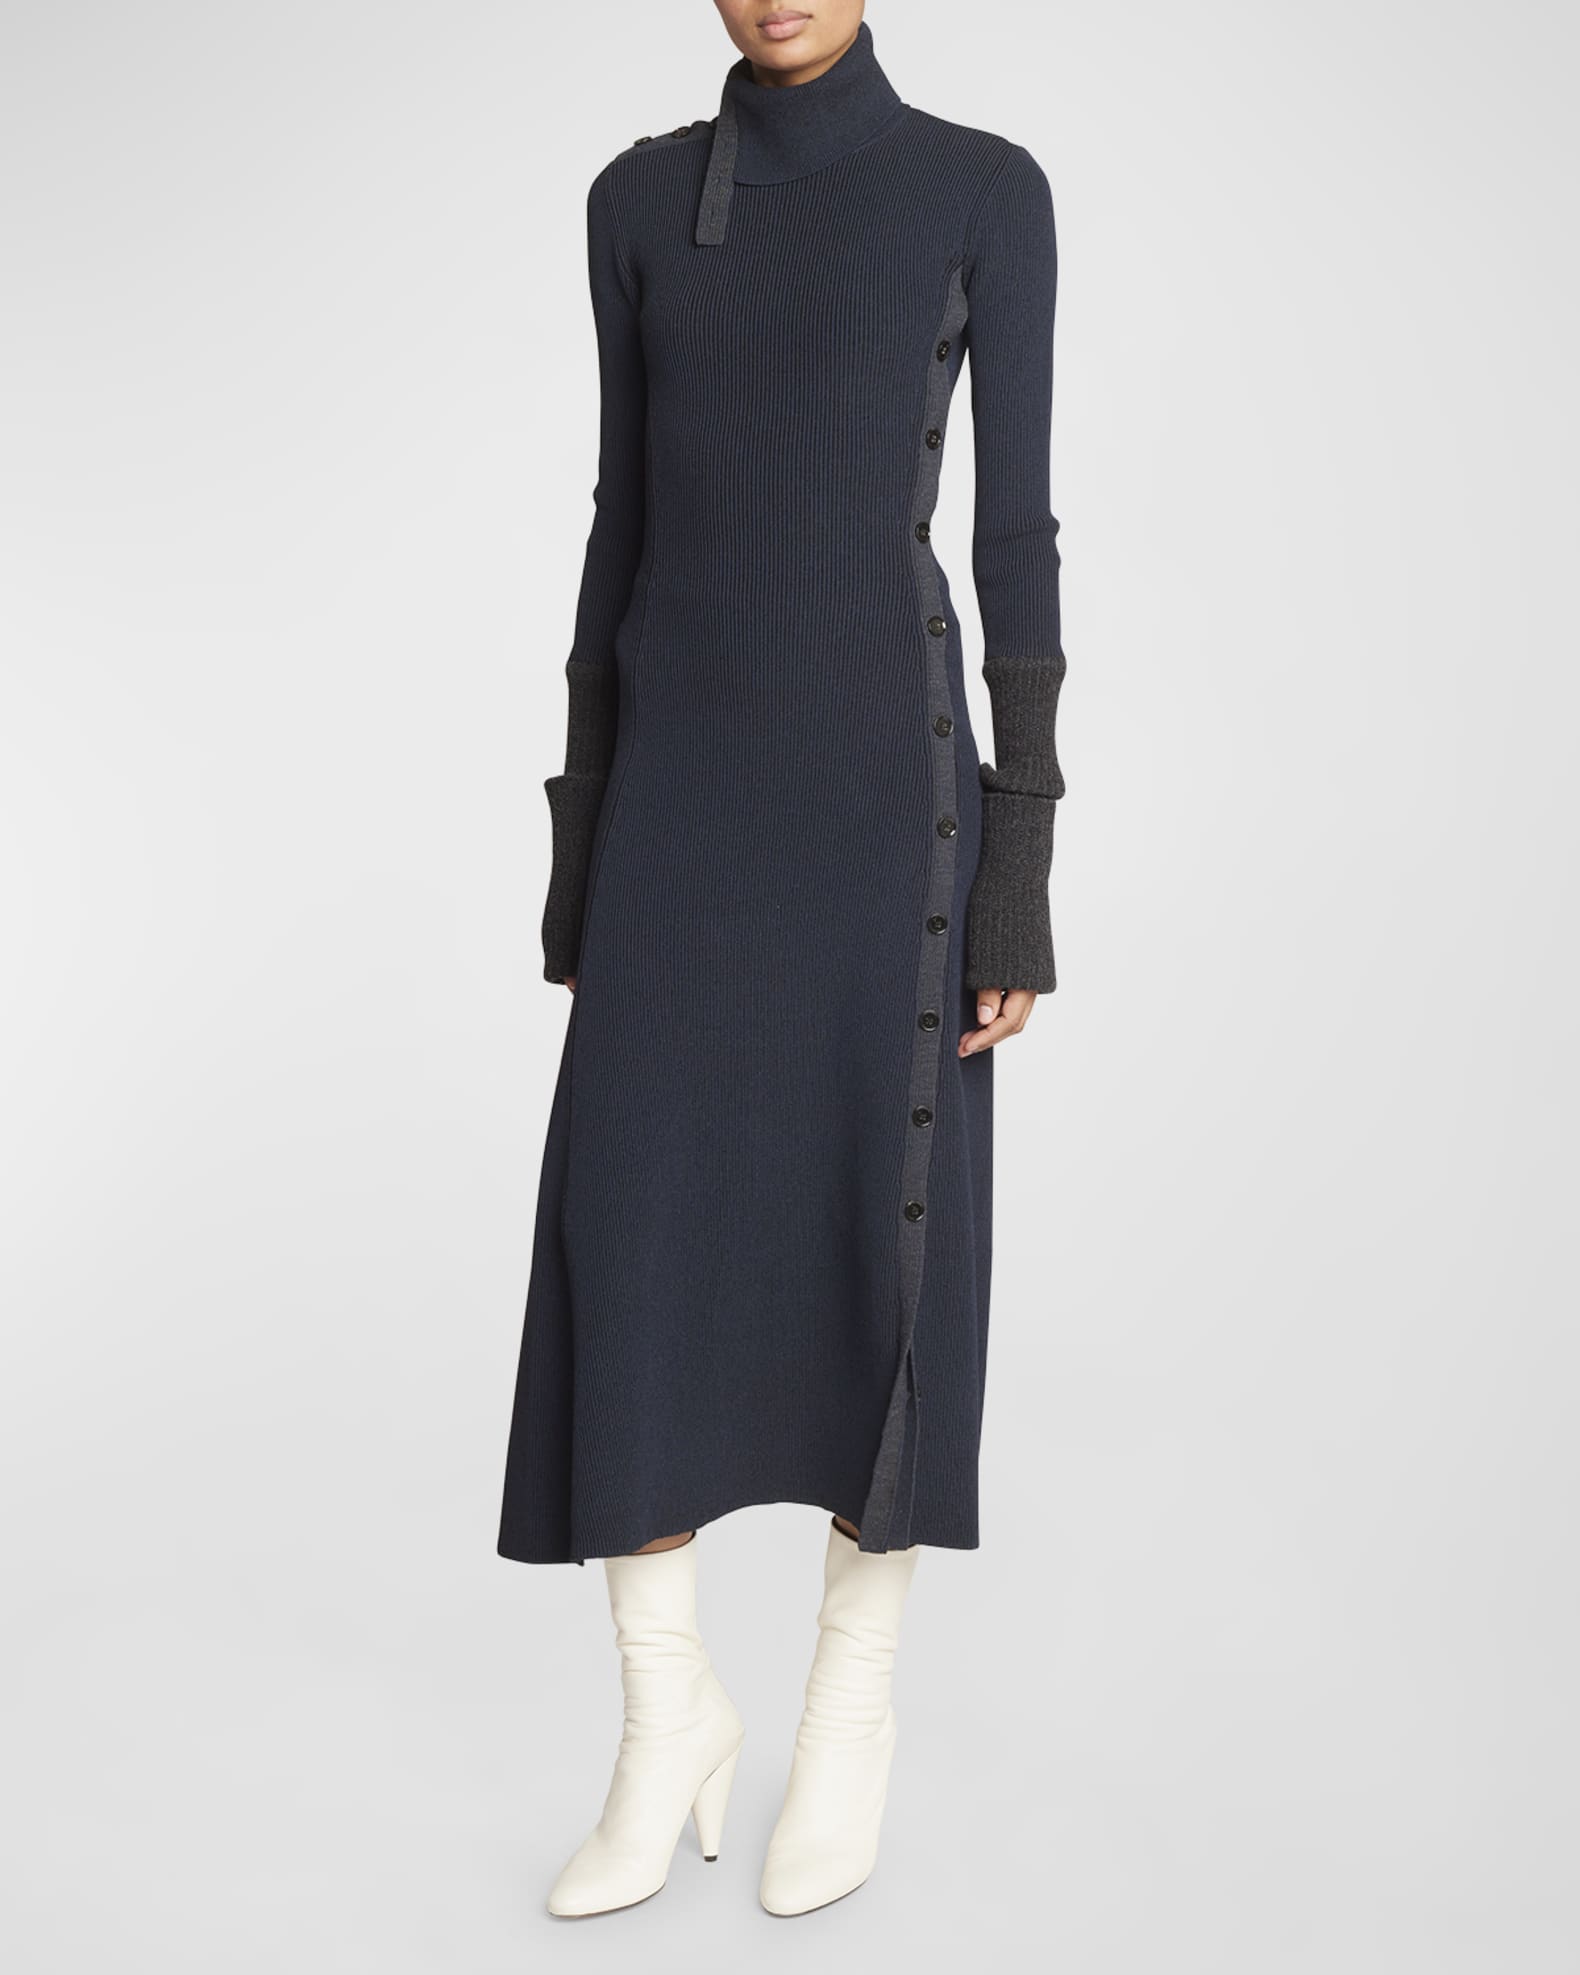 Louis Vuitton Leather Accent Snap Button Dress, Black, 40